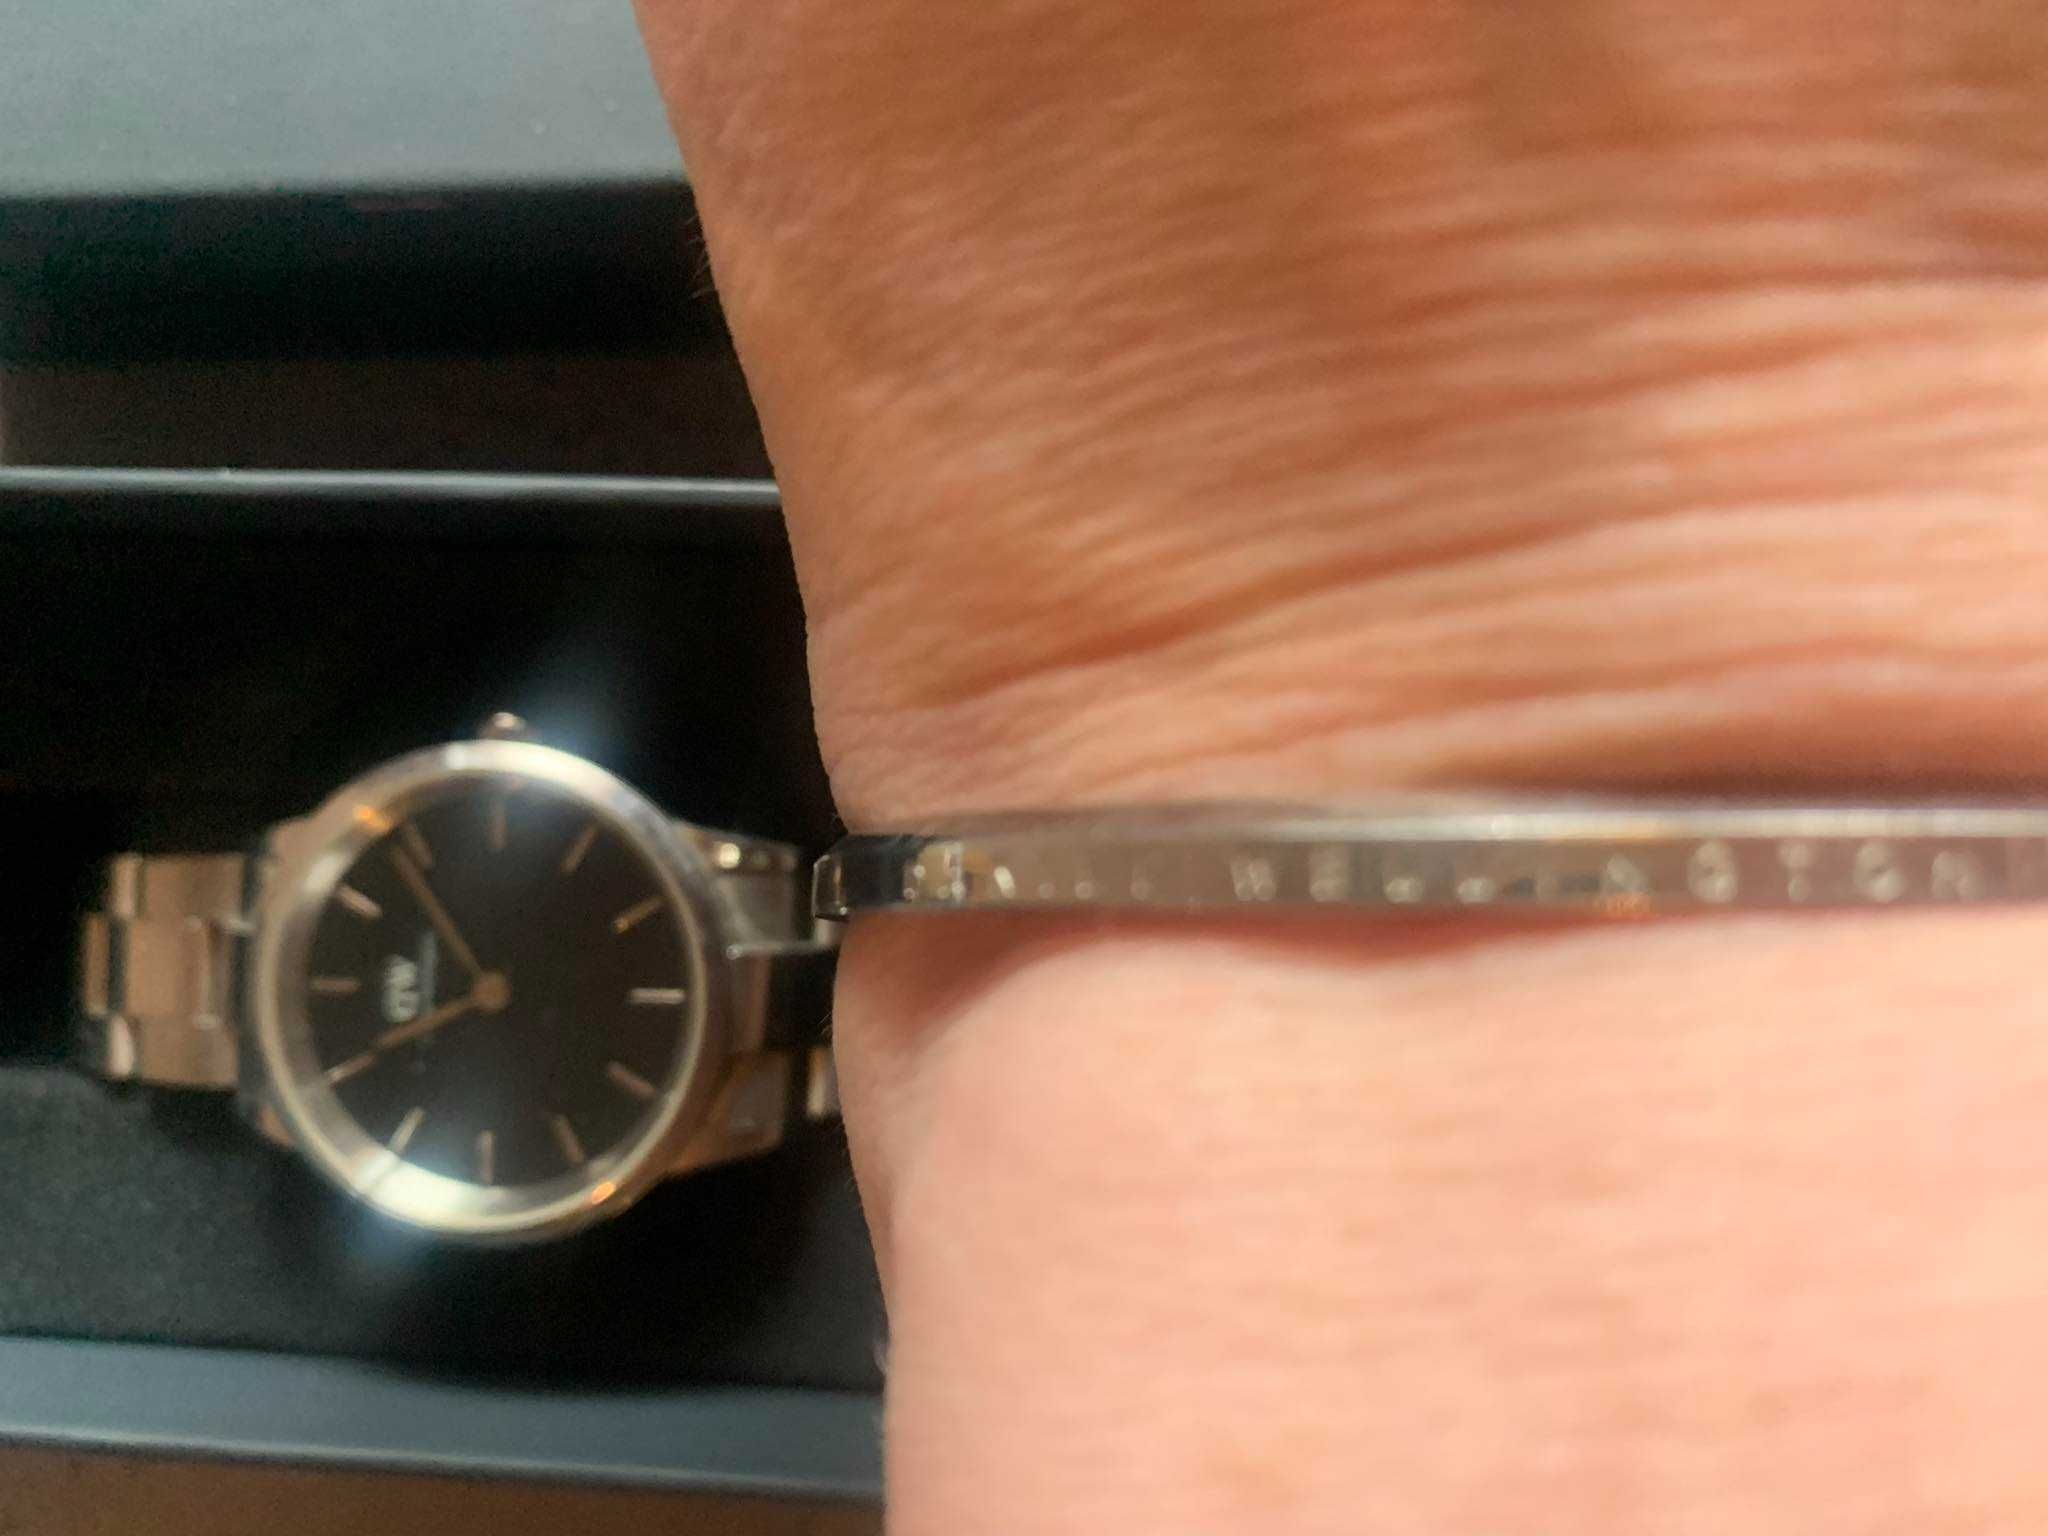 Daniel Wellington DW Iconic zegarek unisex damski i bransoletka stal